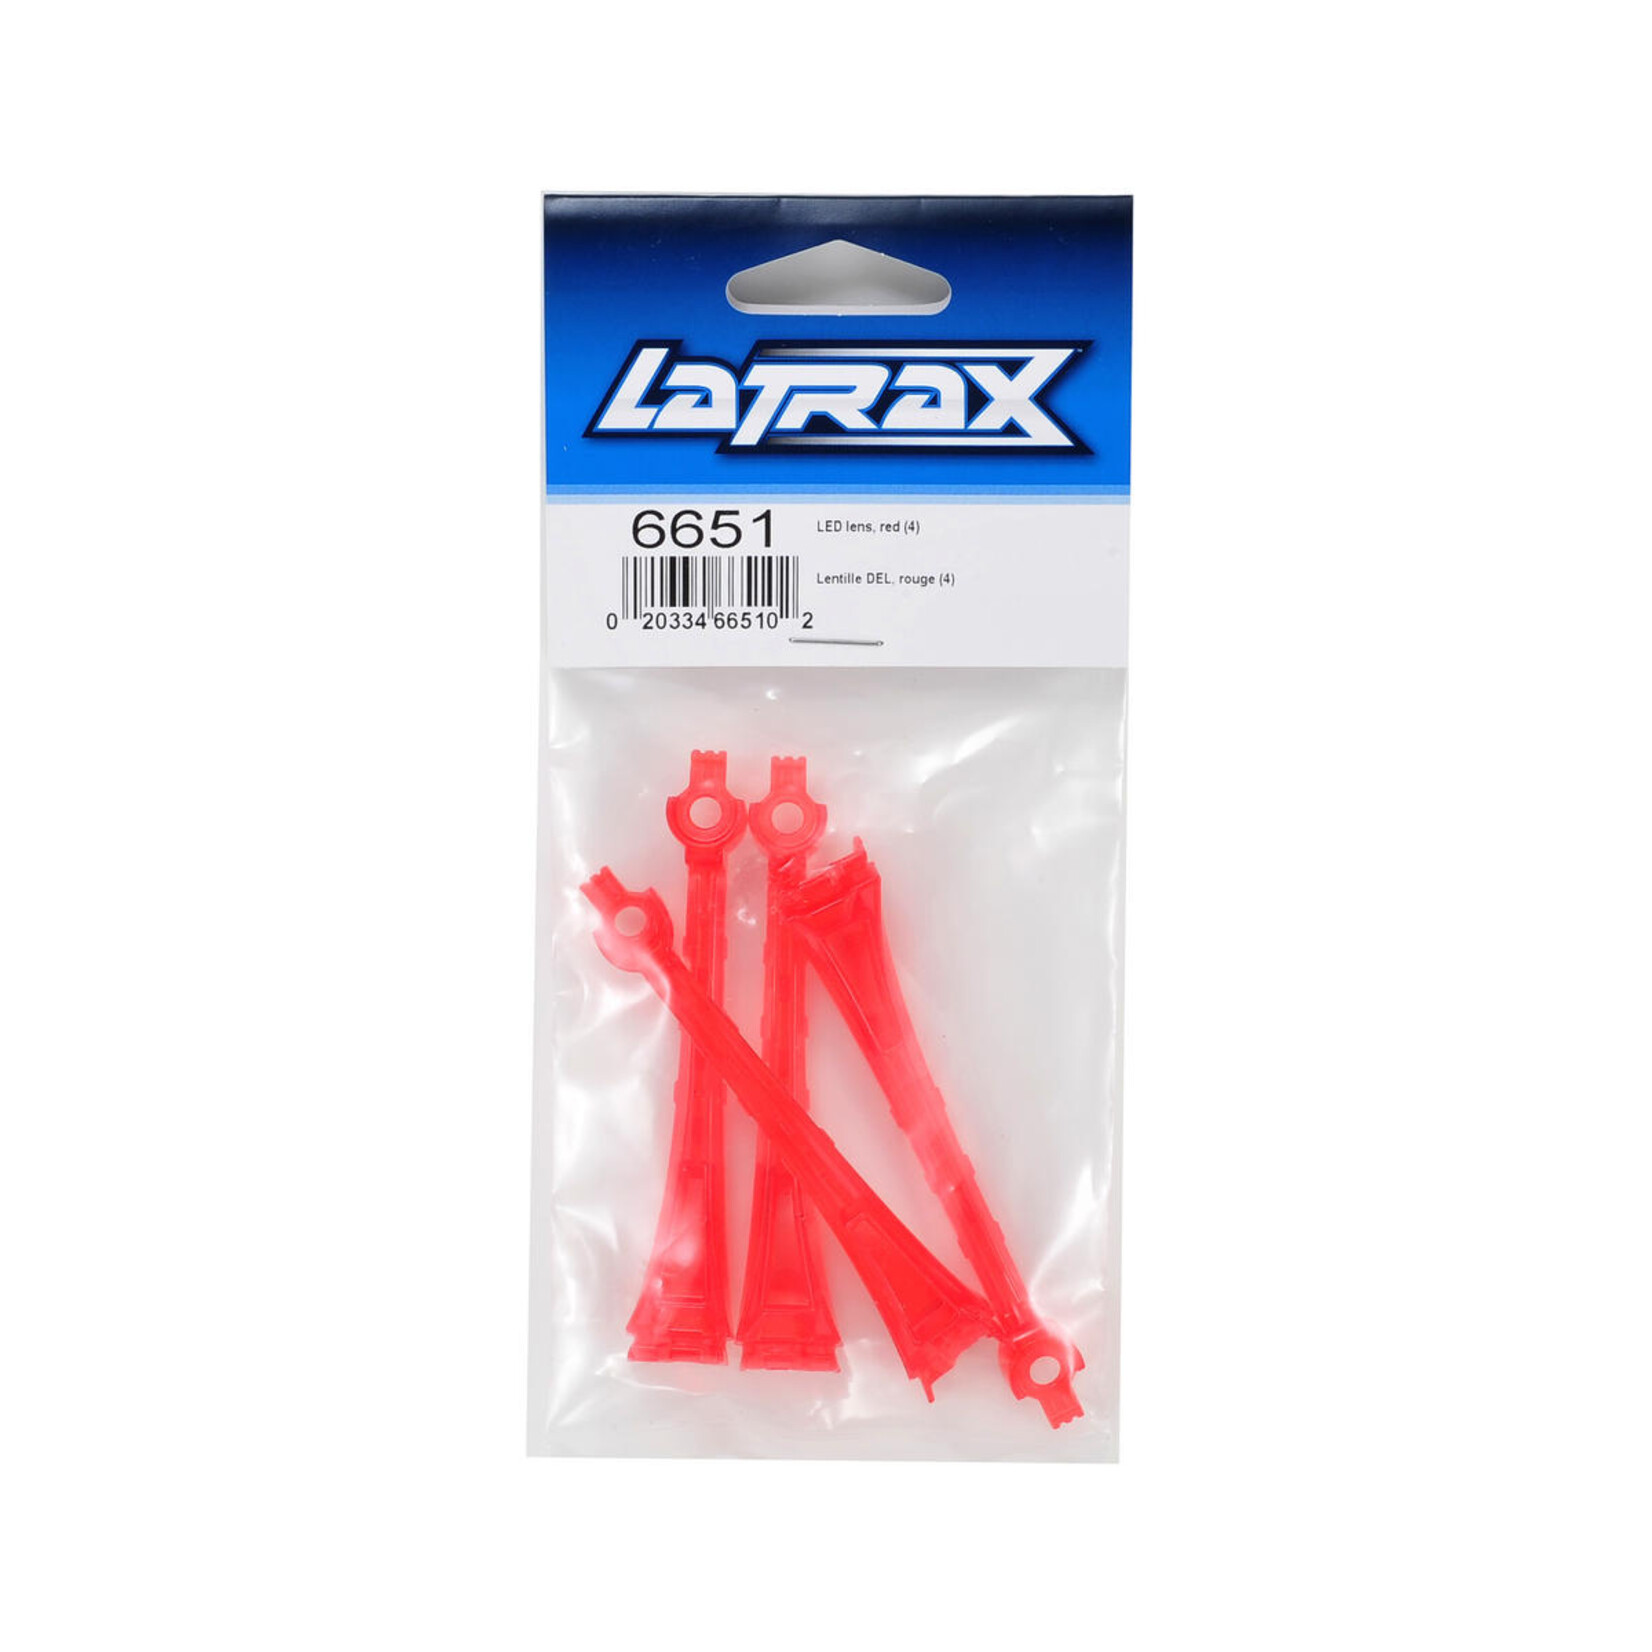 LaTrax Traxxas LaTrax Alias LED Lens (Red) (4) #6651